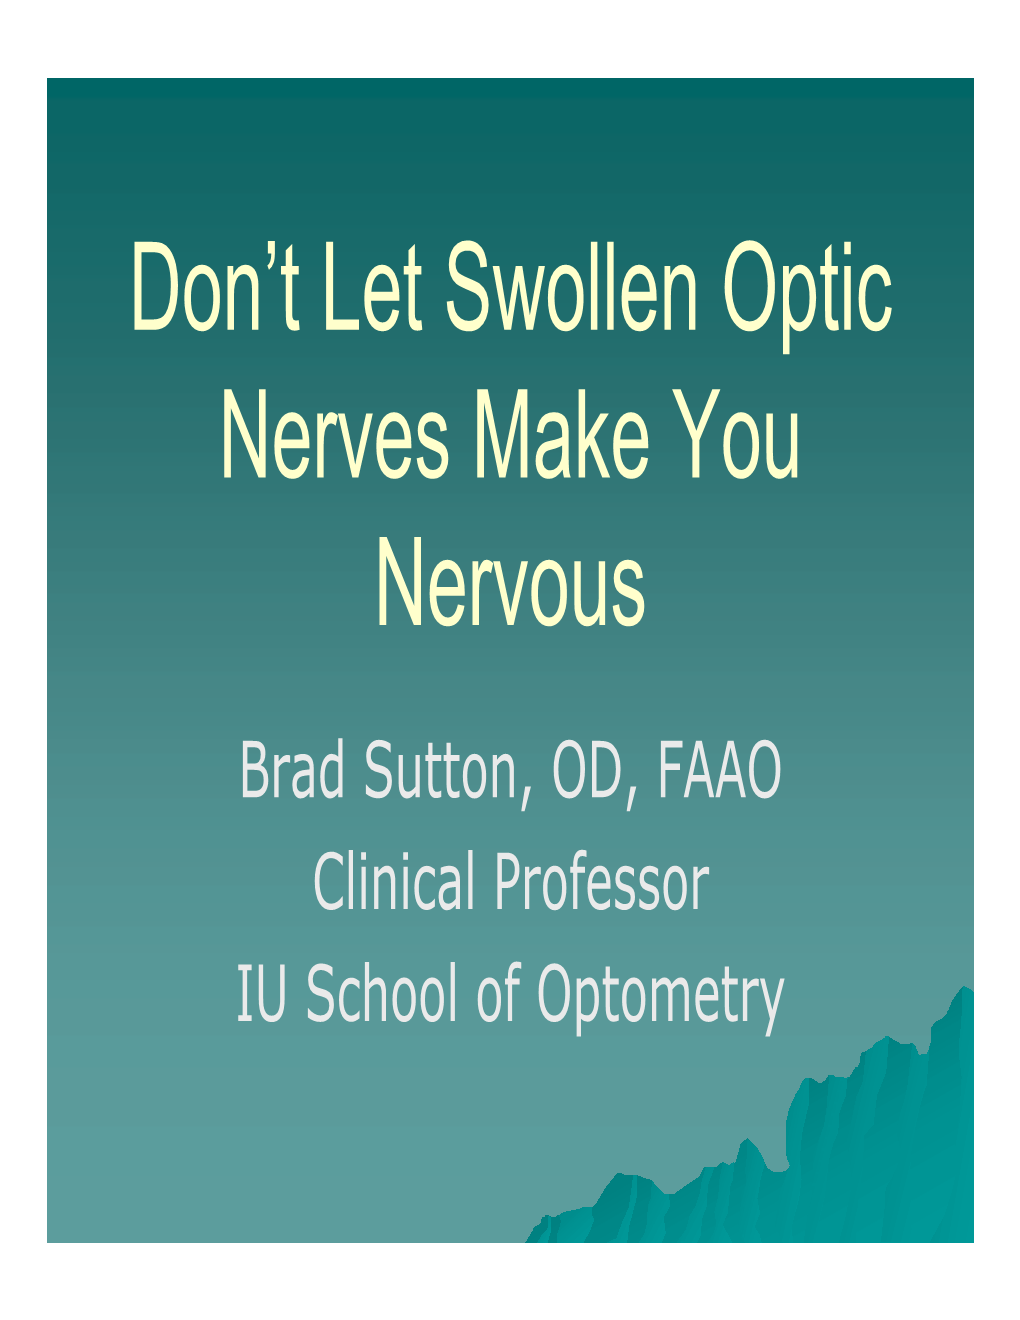 Don't Let Swollen Optic Nerves Make You Nervous